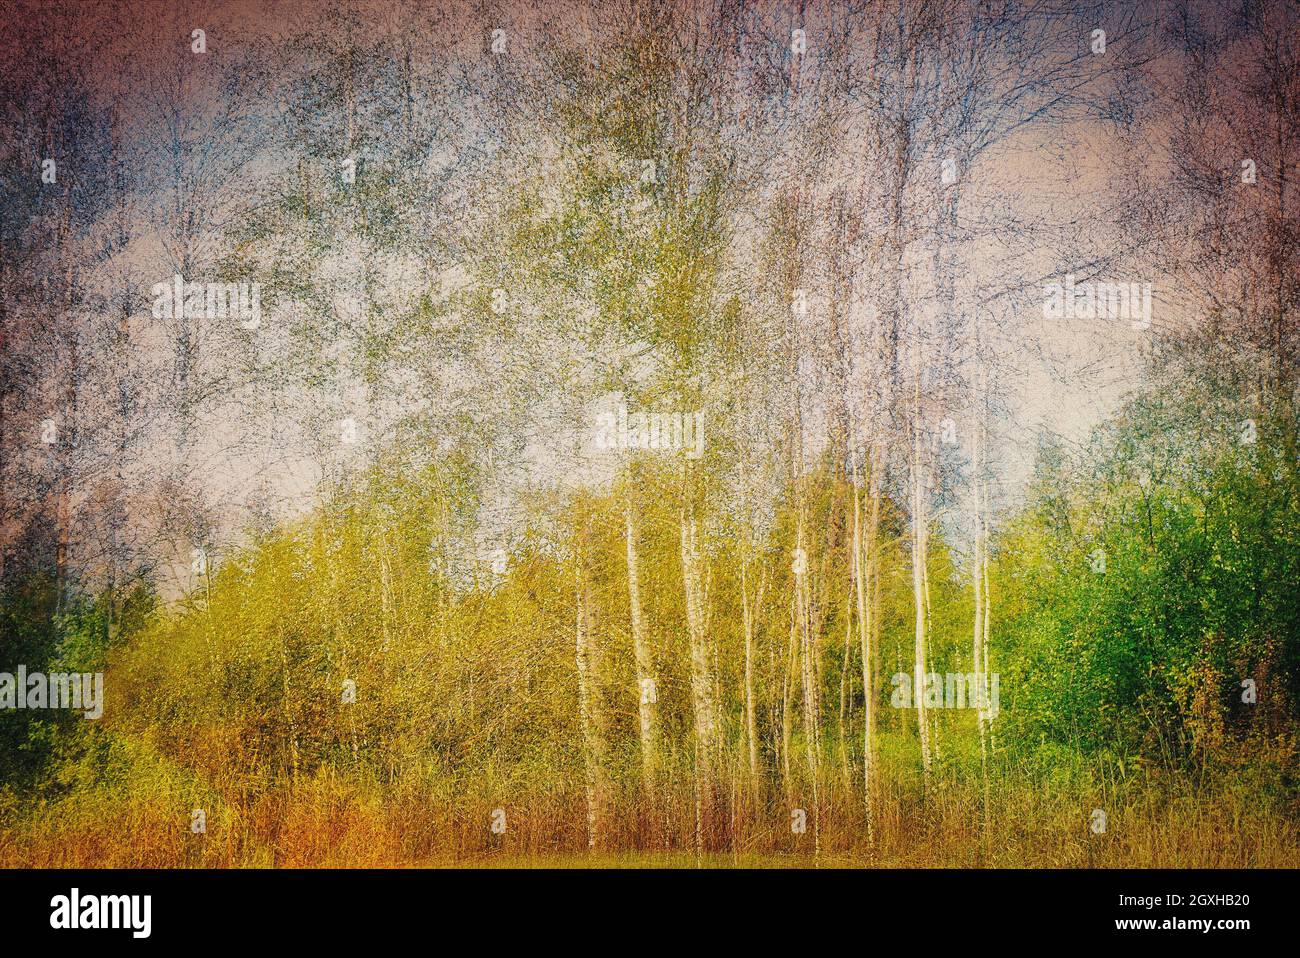 CONTEMPORARY ART: Aspen Trees in the Moor  (Bavaria, Germany) Stock Photo